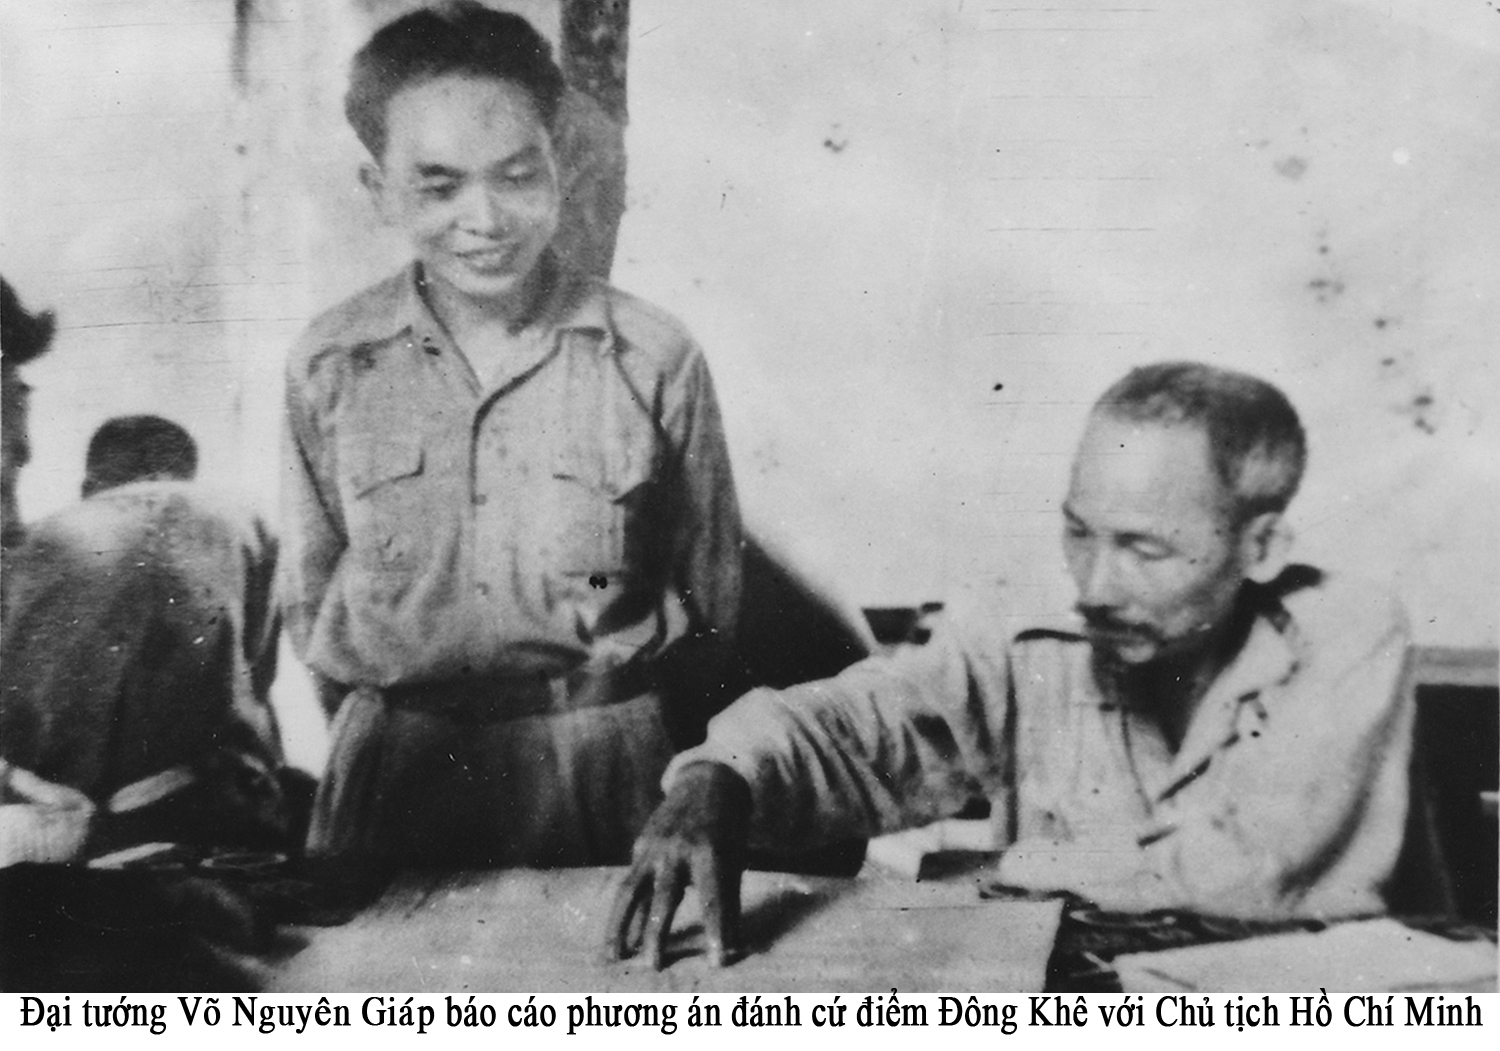 13 (13 đk) Đại tướng báo cáo phương án đánh cứ điểm Đông Khê với Chủ tịch Hồ Chí Minh